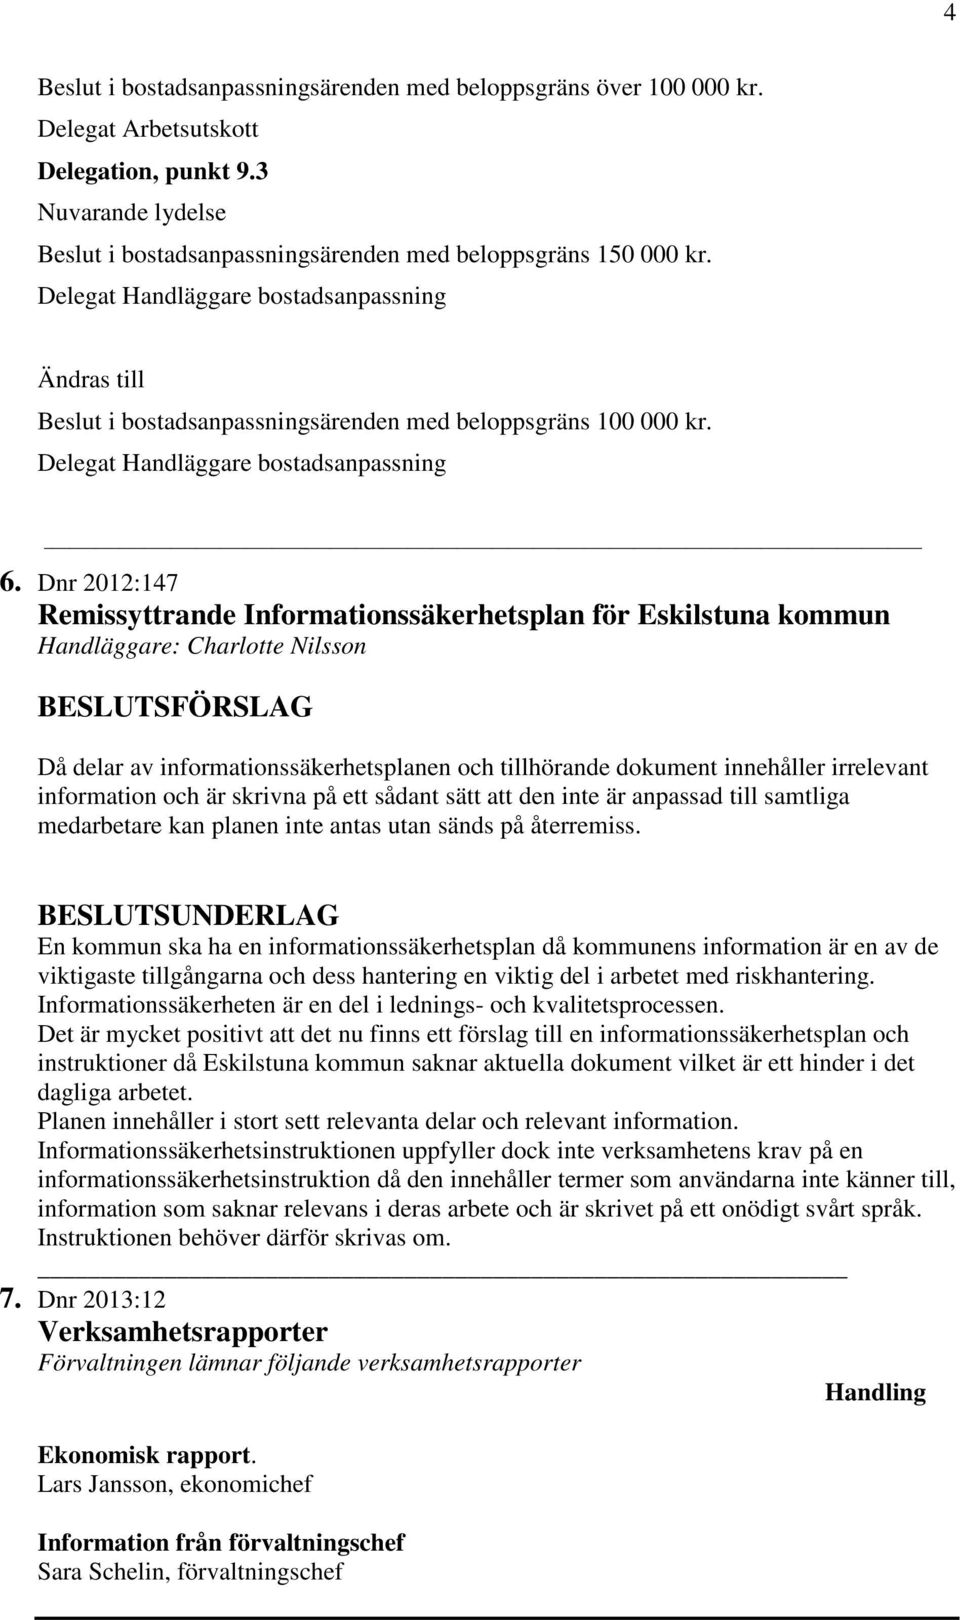 Dnr 2012:147 Remissyttrande Informationssäkerhetsplan för Eskilstuna kommun Handläggare: Charlotte Nilsson Då delar av informationssäkerhetsplanen och tillhörande dokument innehåller irrelevant